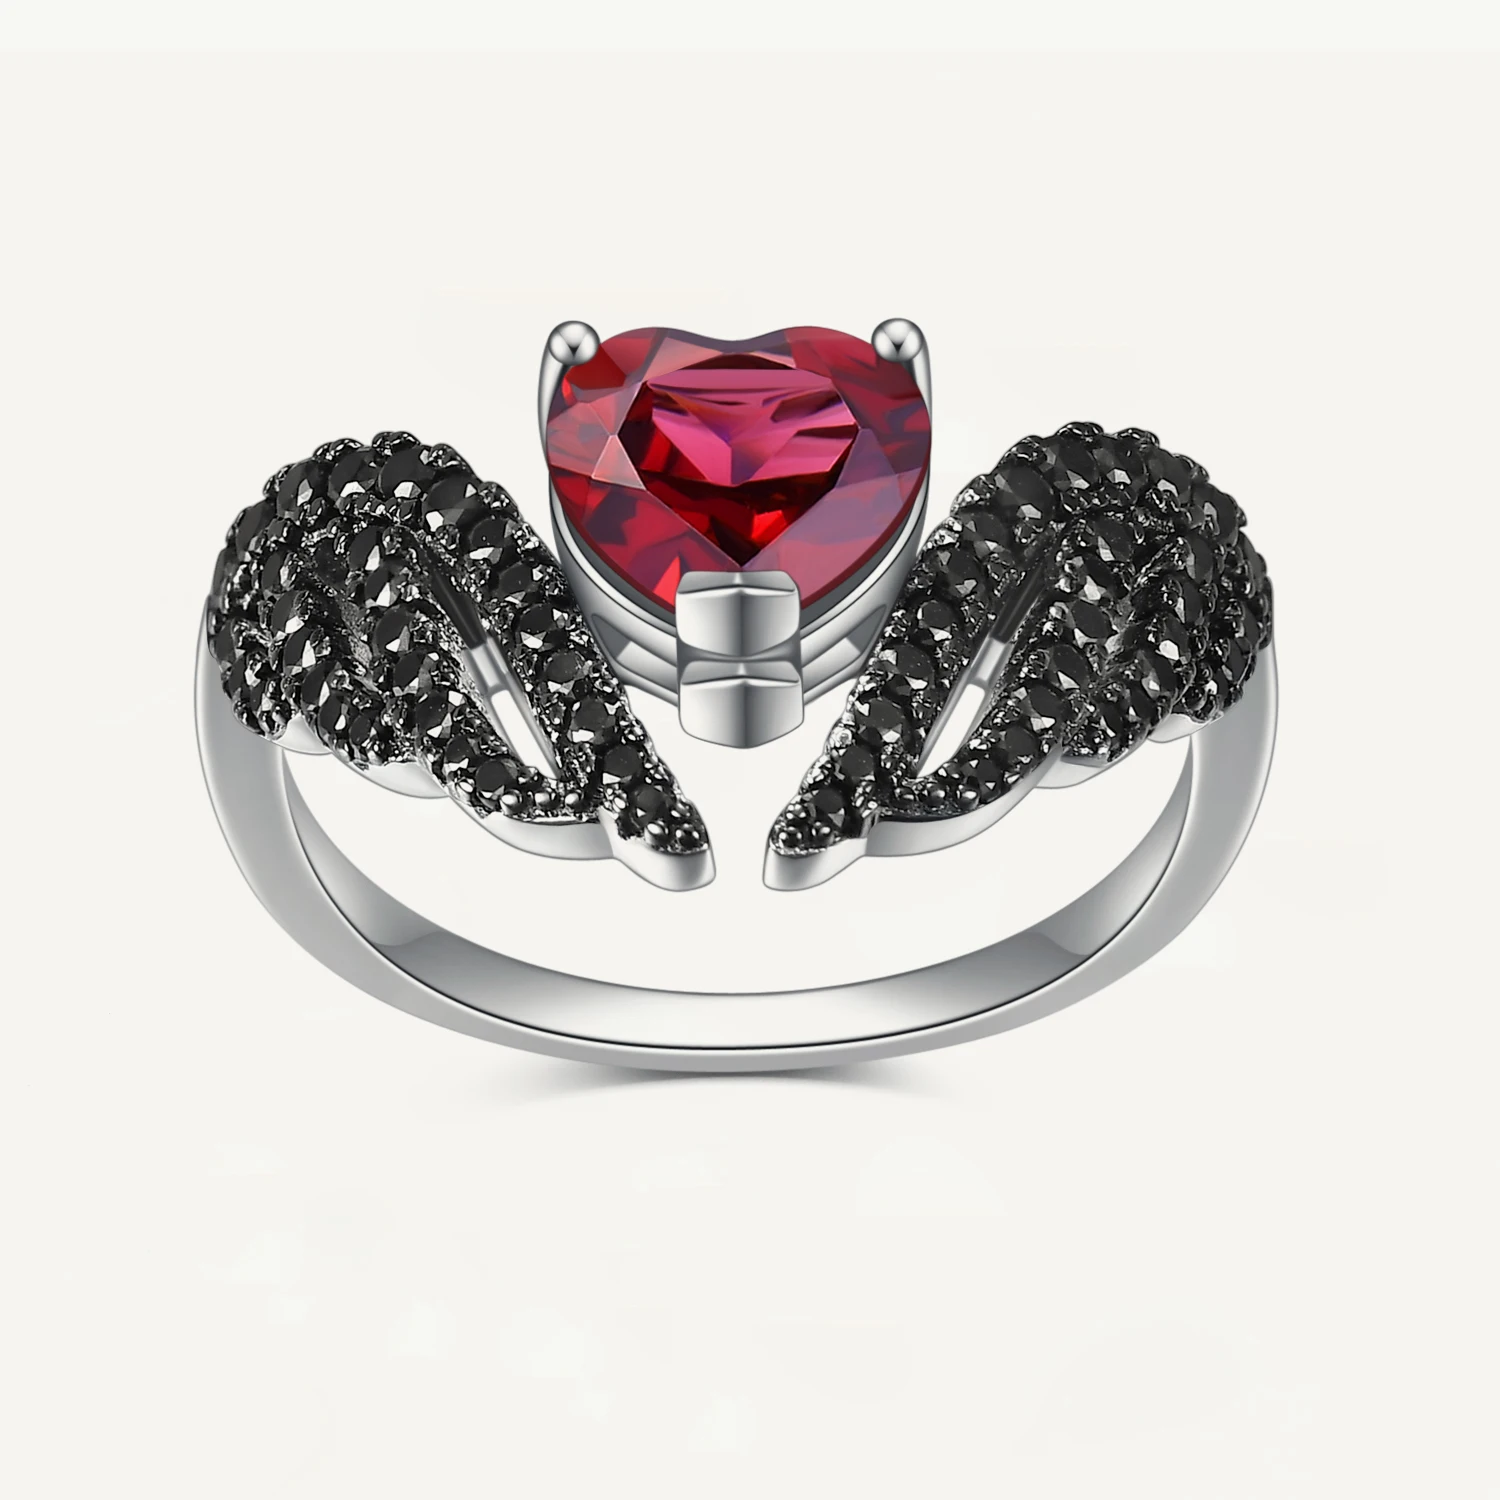 

Женское кольцо из стерлингового серебра 925 пробы GEM'S BALLET Devil Wings, оригинальное ювелирное изделие в готическом стиле